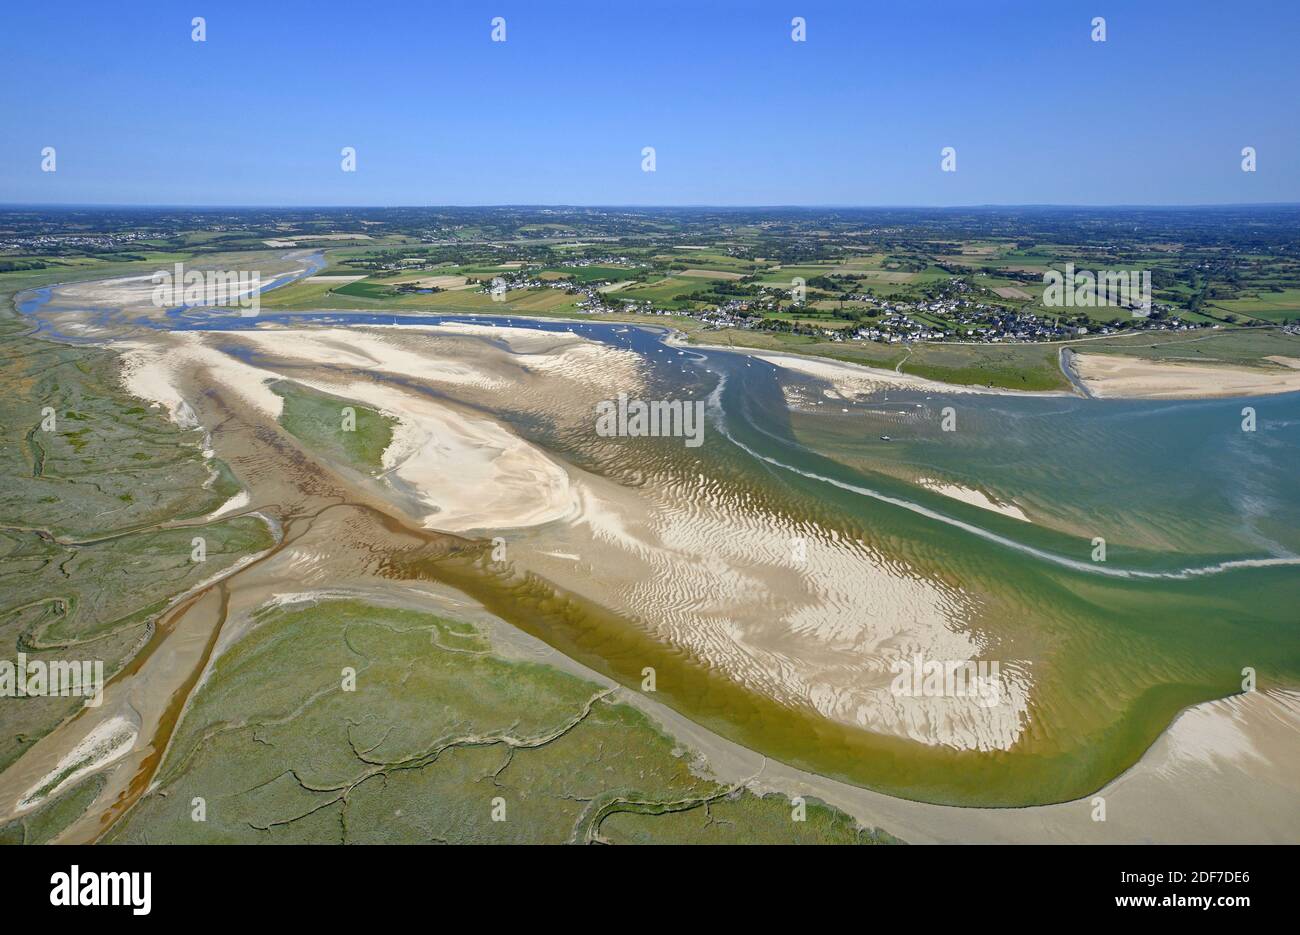 France, Manche, Agon-Coutainville, estuaire de la Sienne (vue aérienne) Banque D'Images